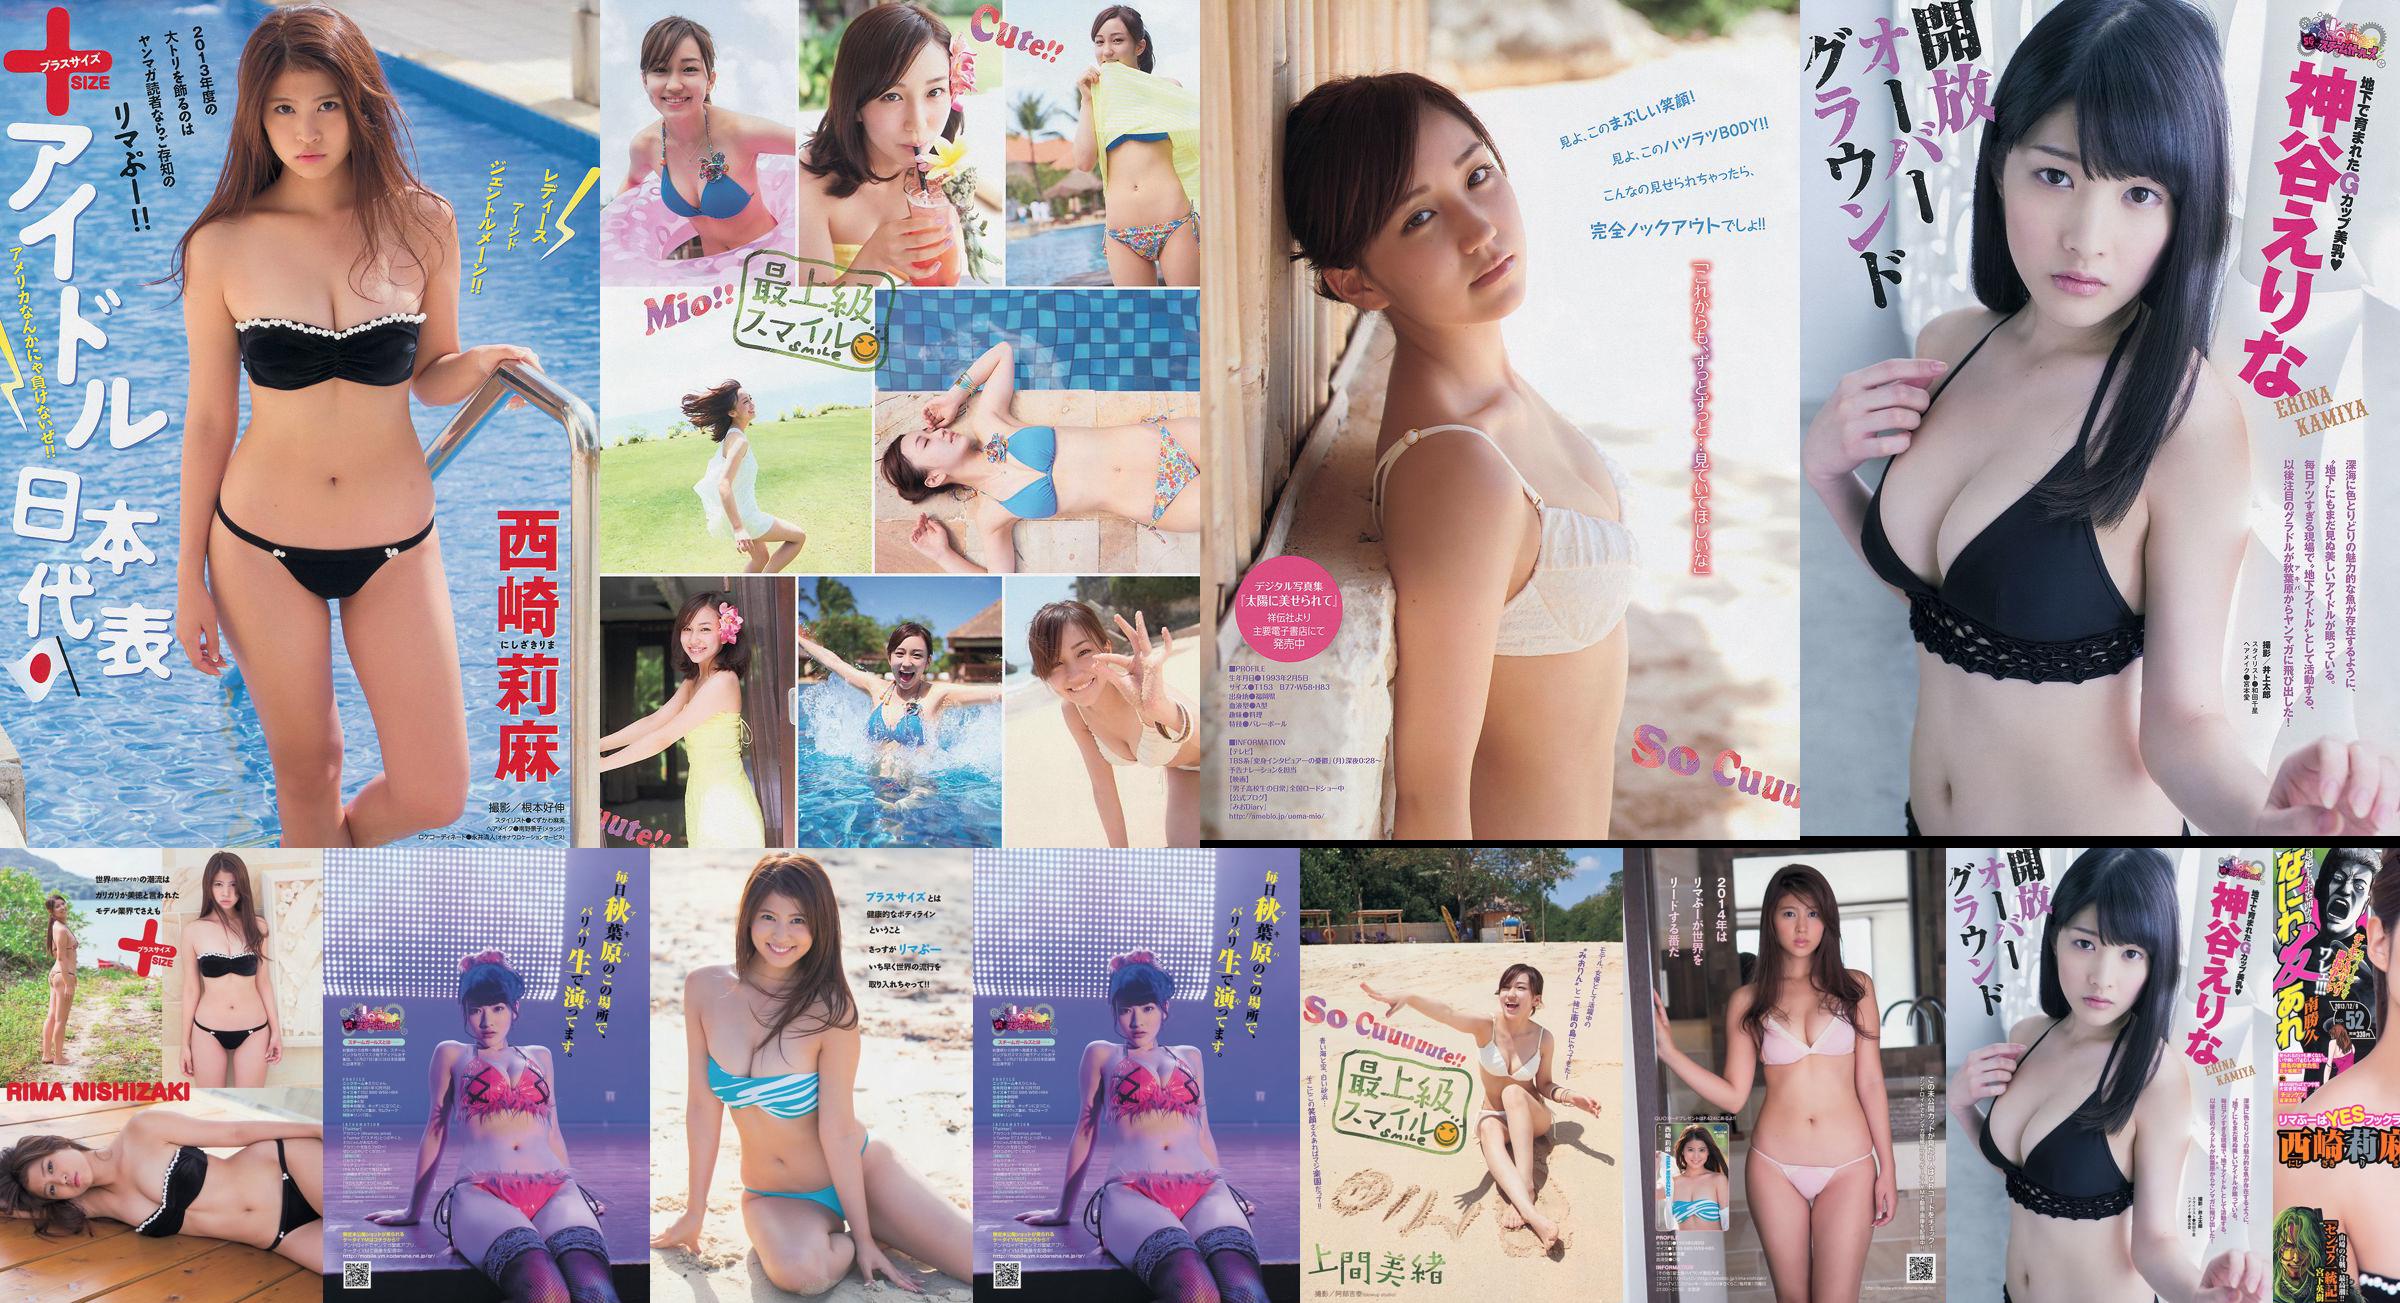 [Revista joven] Rima Nishizaki Mio Uema Erina Kamiya 2013 No.52 Photo Moshi No.af5d75 Página 3